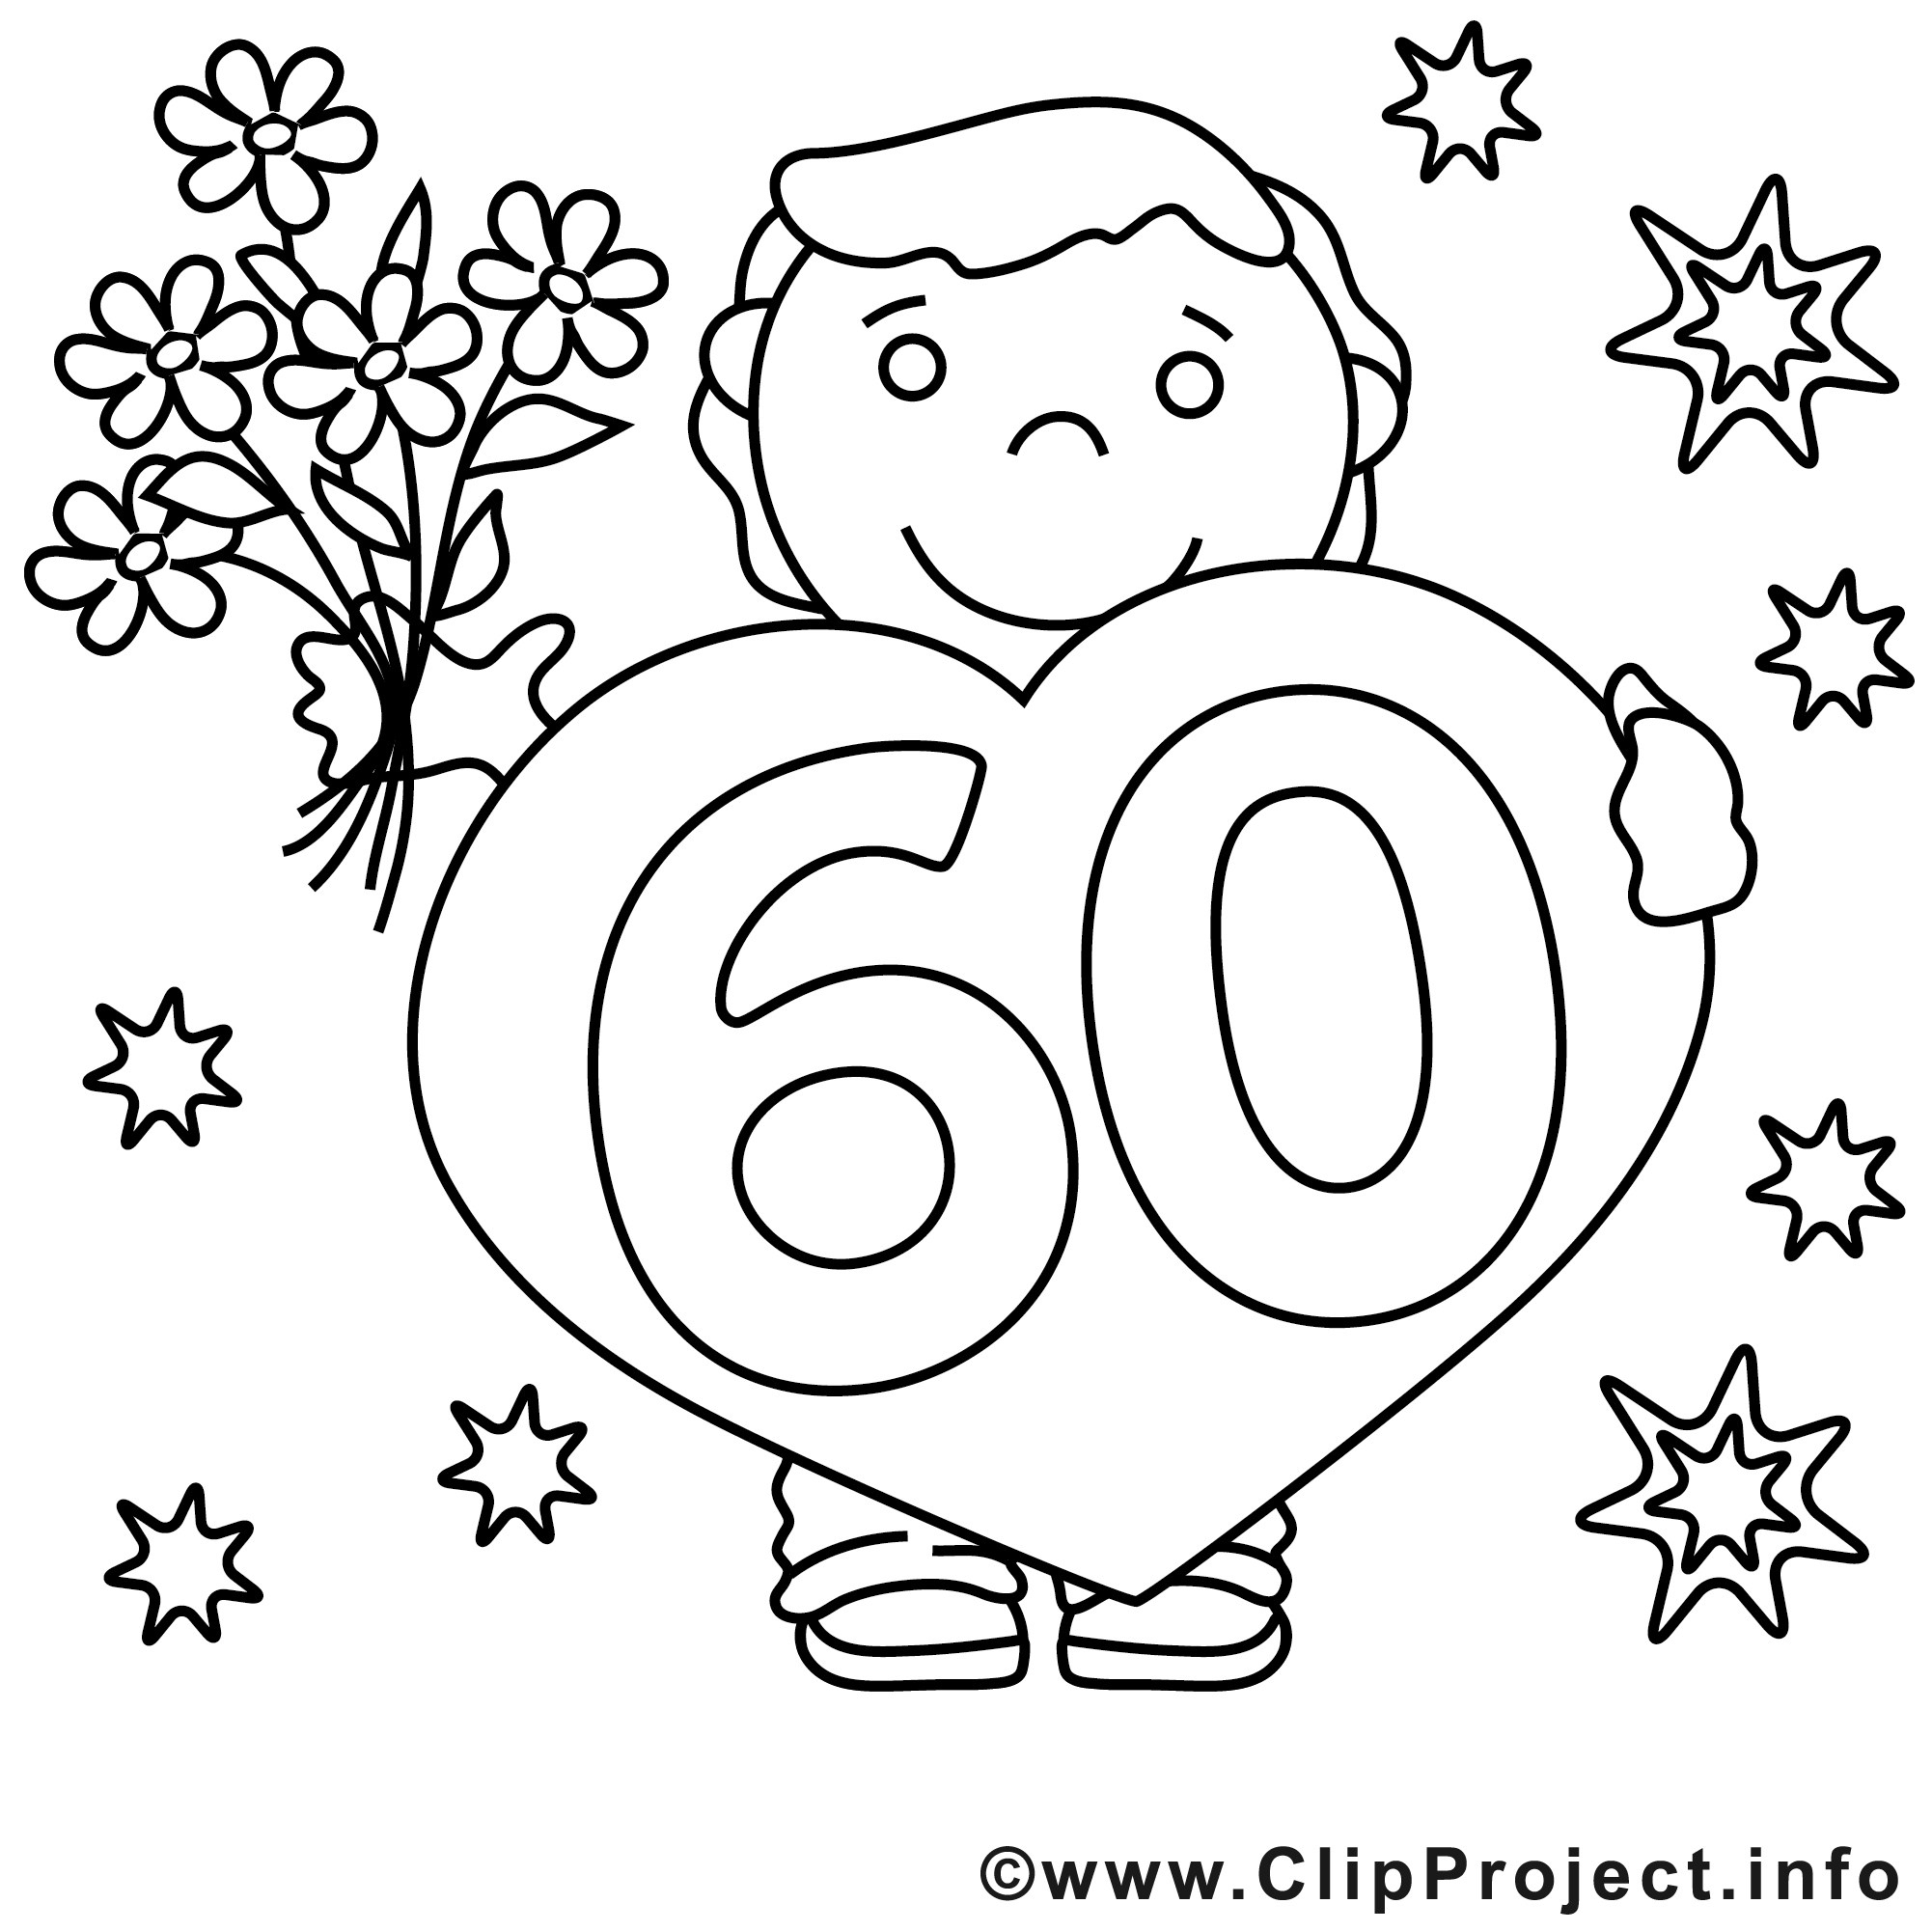 Ausmalbilder 60 Geburtstag Ausdrucken | Geburtstagstorte für Ausmalbilder Geburtstag Zum Ausdrucken